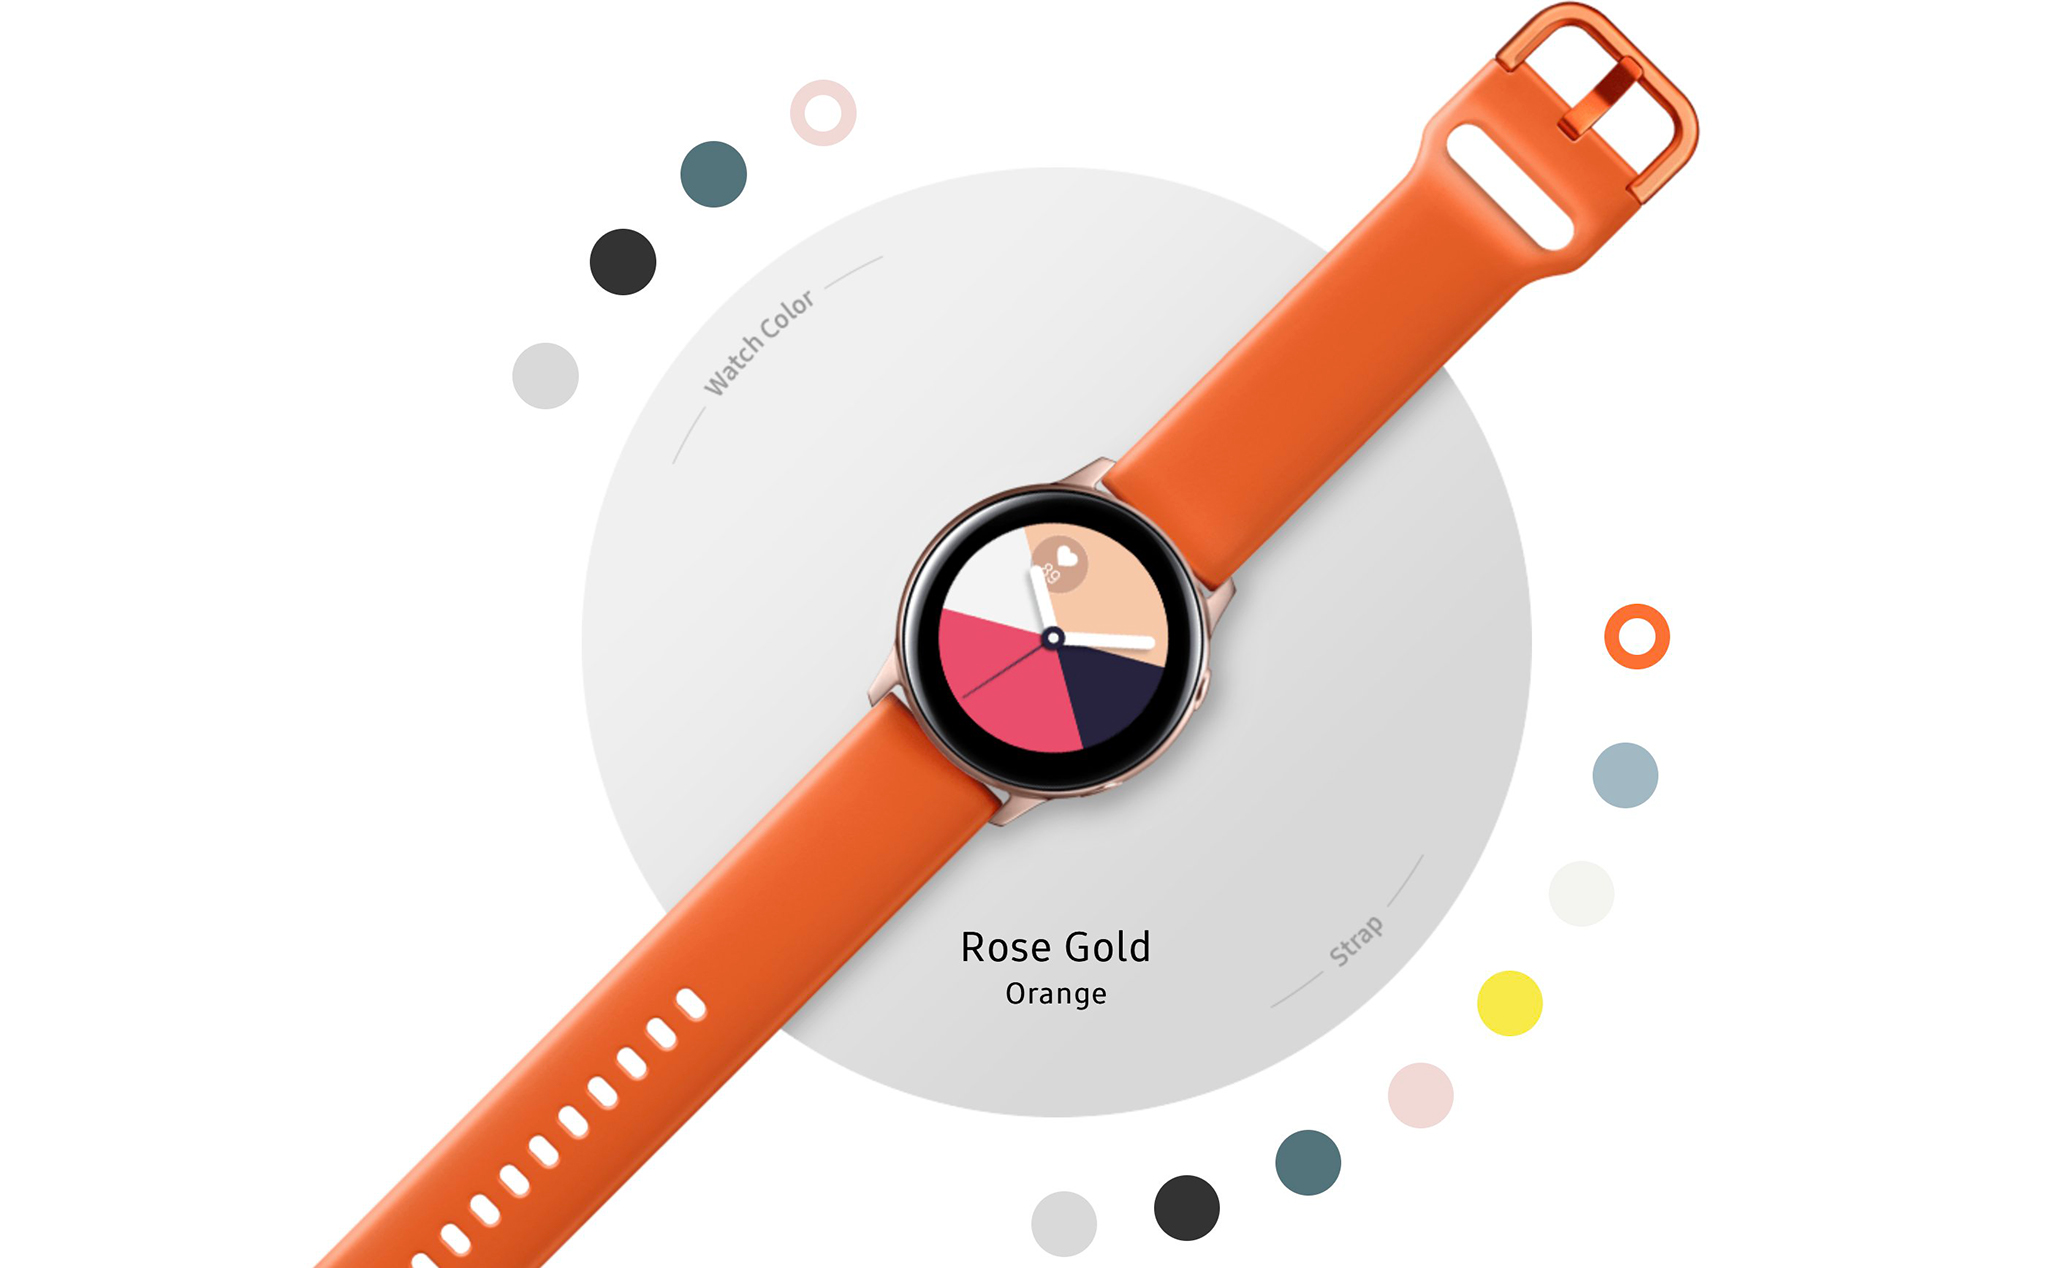 Galaxy Watch Active bán ra tại Việt Nam: giá 5.49 triệu, bán ra từ 10/4 với 3 phiên bản màu